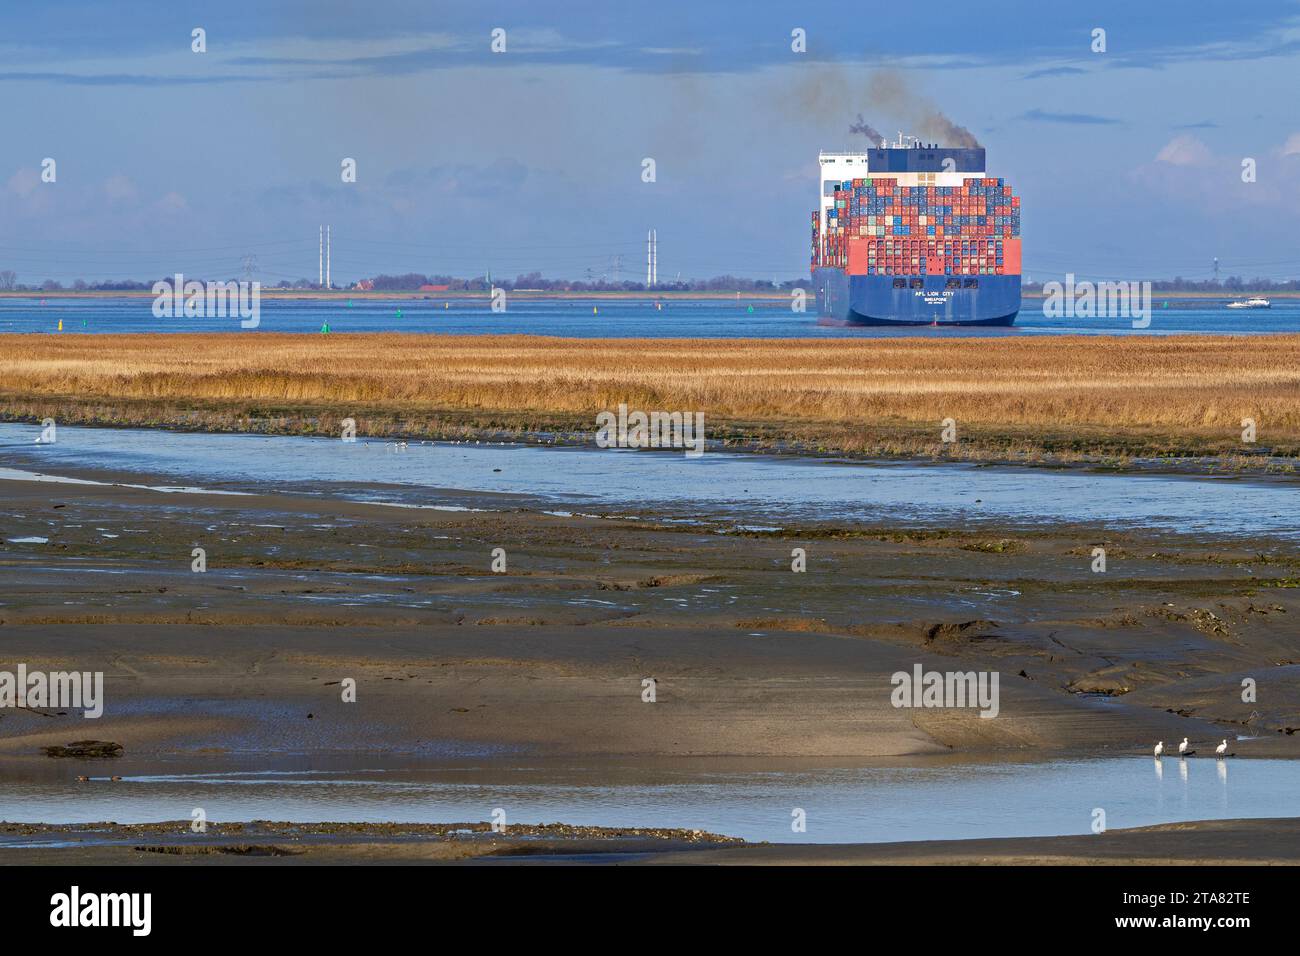 Bateau porte-conteneurs naviguant sur l'Escaut occidental et vue sur le marais salant de l'estuaire à la réserve naturelle Prosperpolder, Flandre orientale, Belgique Banque D'Images